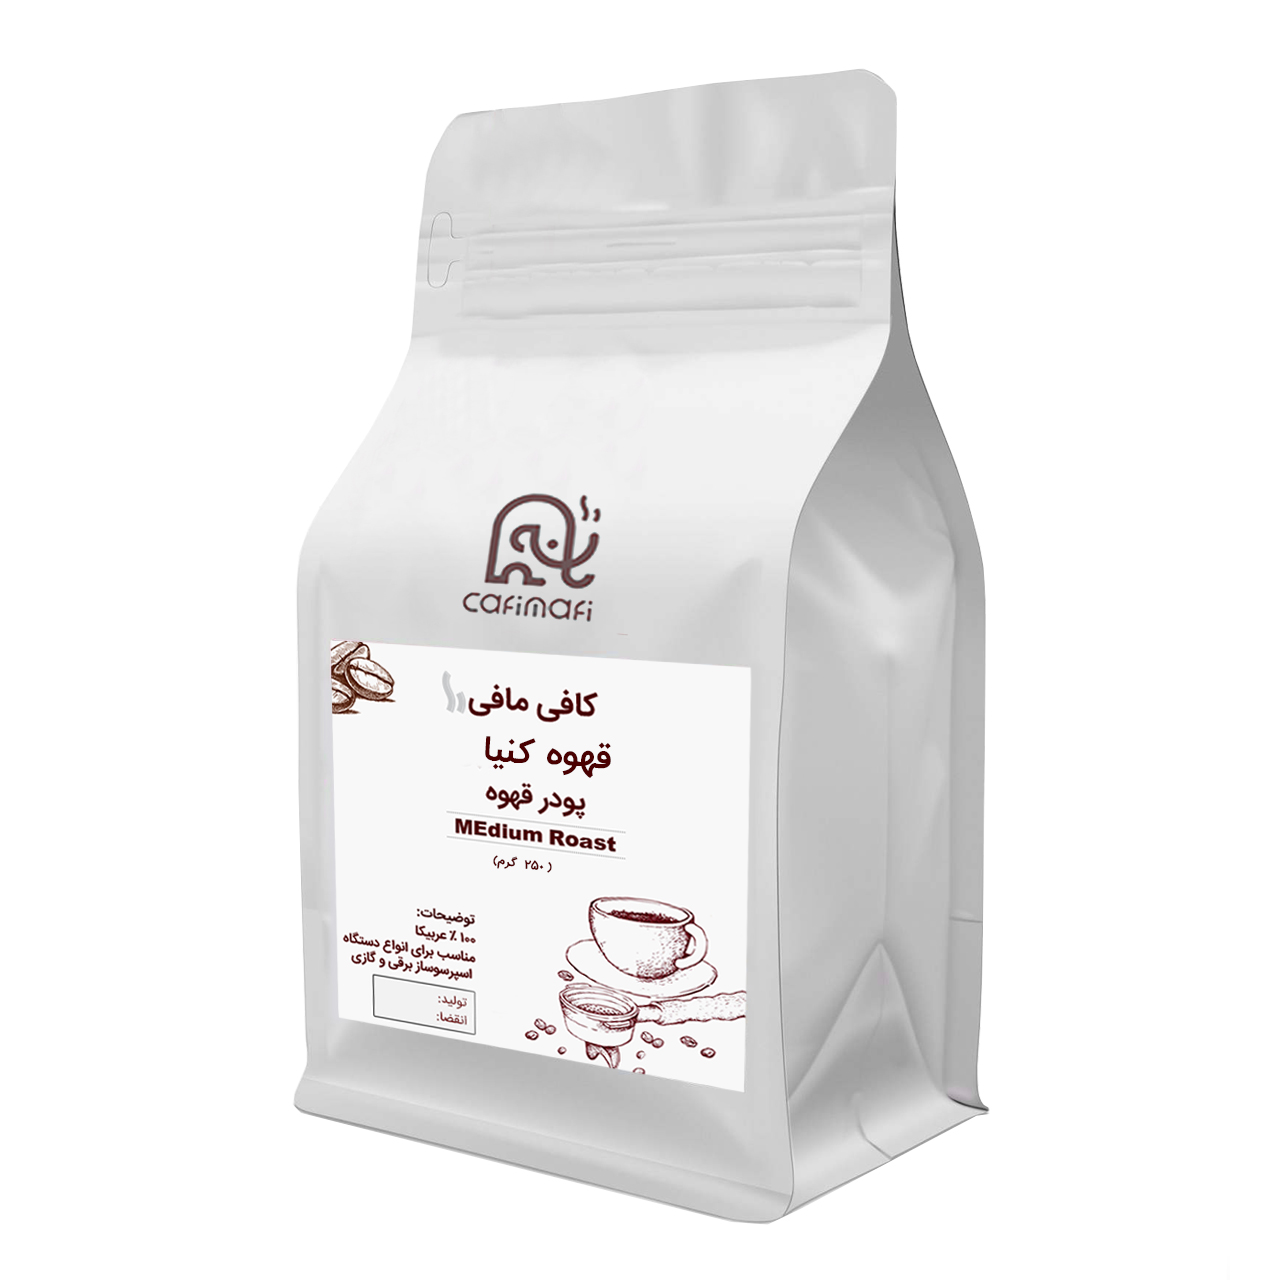  پودر قهوه کنیا کافی مافی - 250 گرم